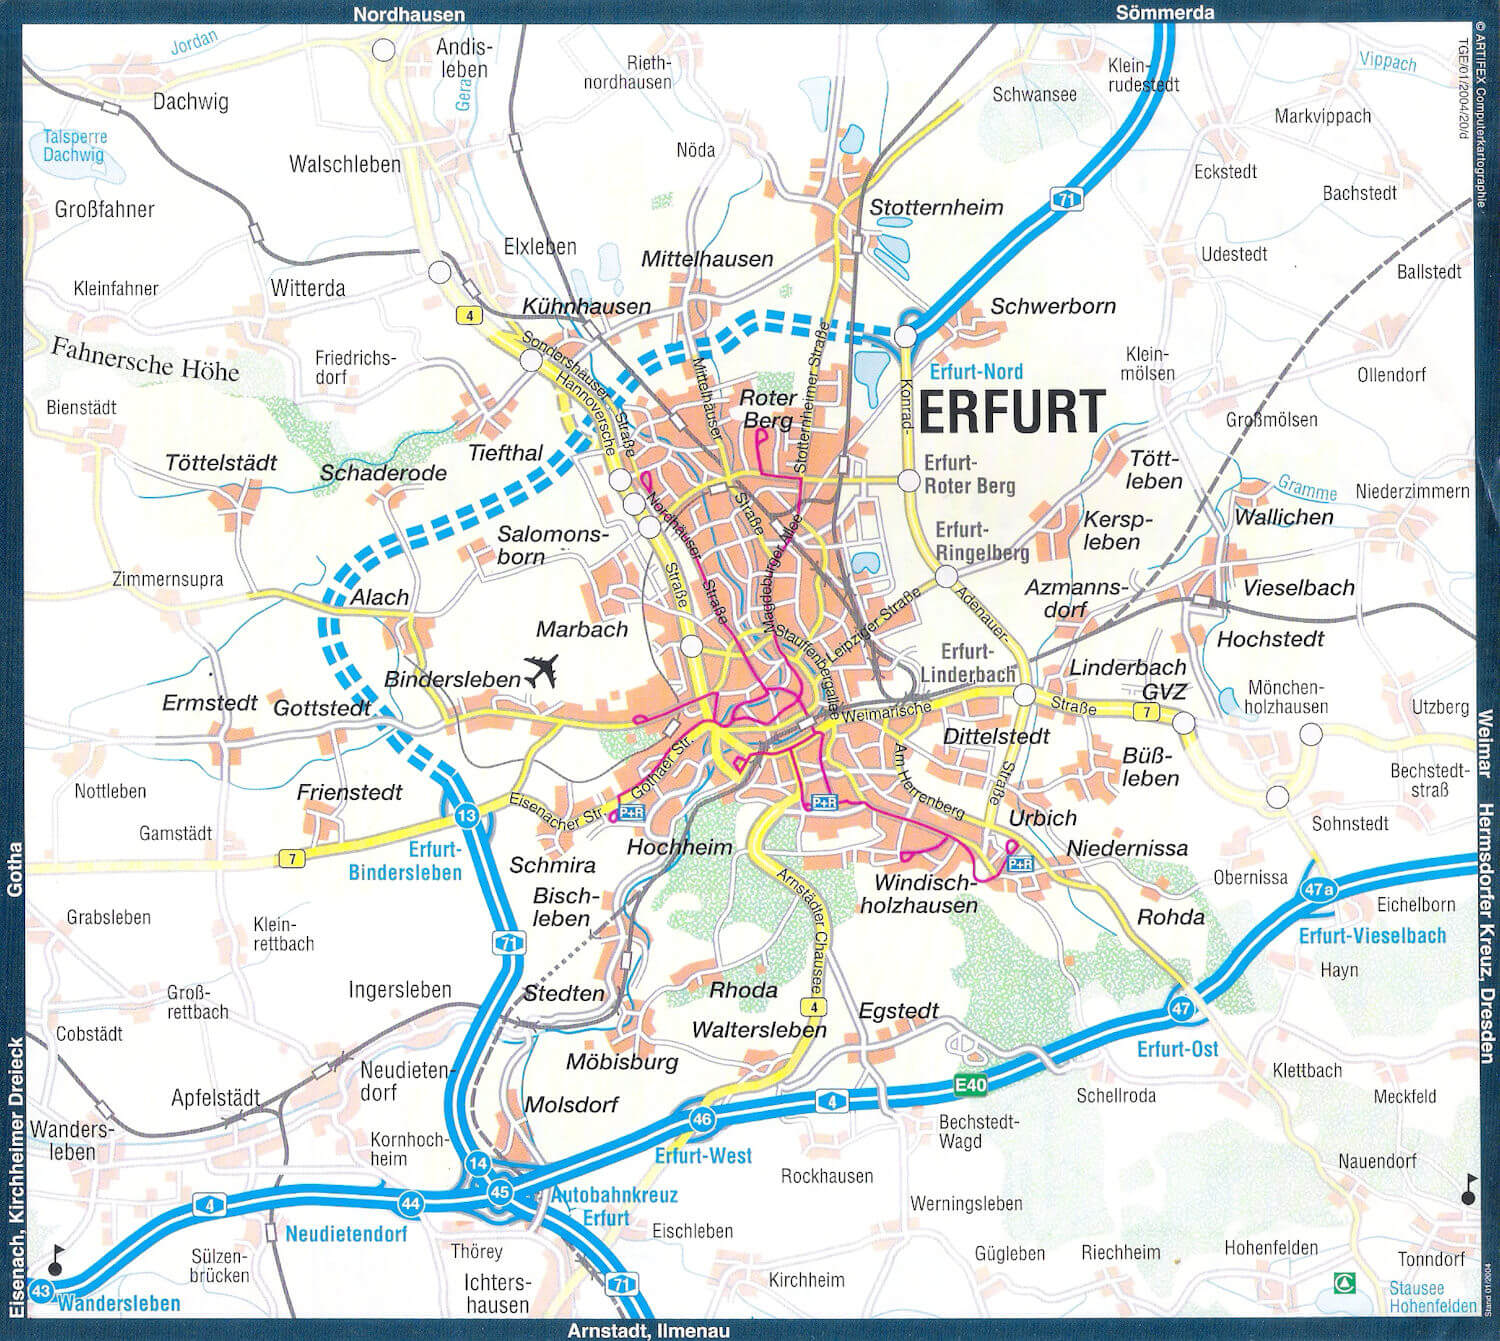 Erfurt itineraire plan